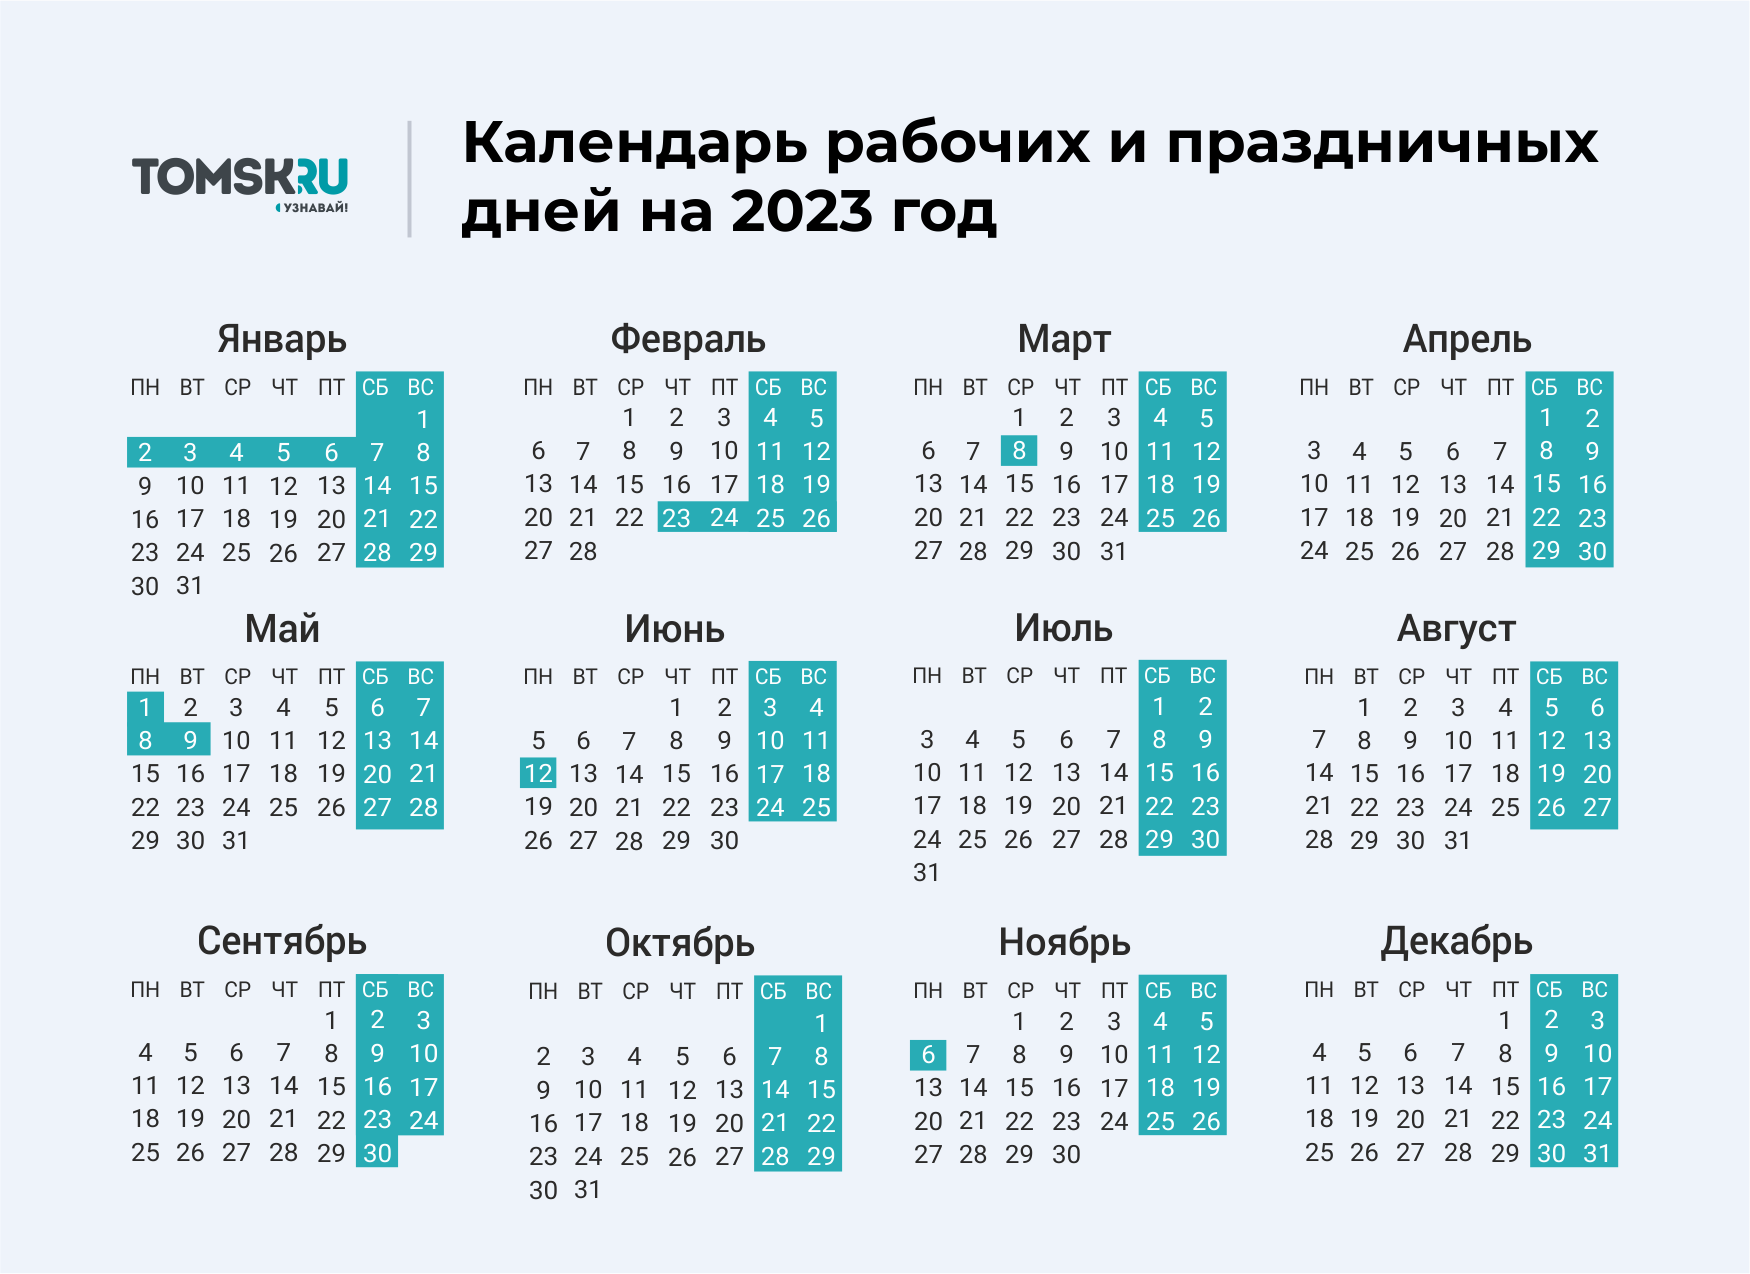 Какие дни выходные на 9. Выходные дни в 2023 году в России календарь. Календарь выходных и праздничных дней на 2023 год в России. Календарь праздничных выходеыхв 2023 году. Календарь на 2023 год с праздниками и выходными выходные снизу.